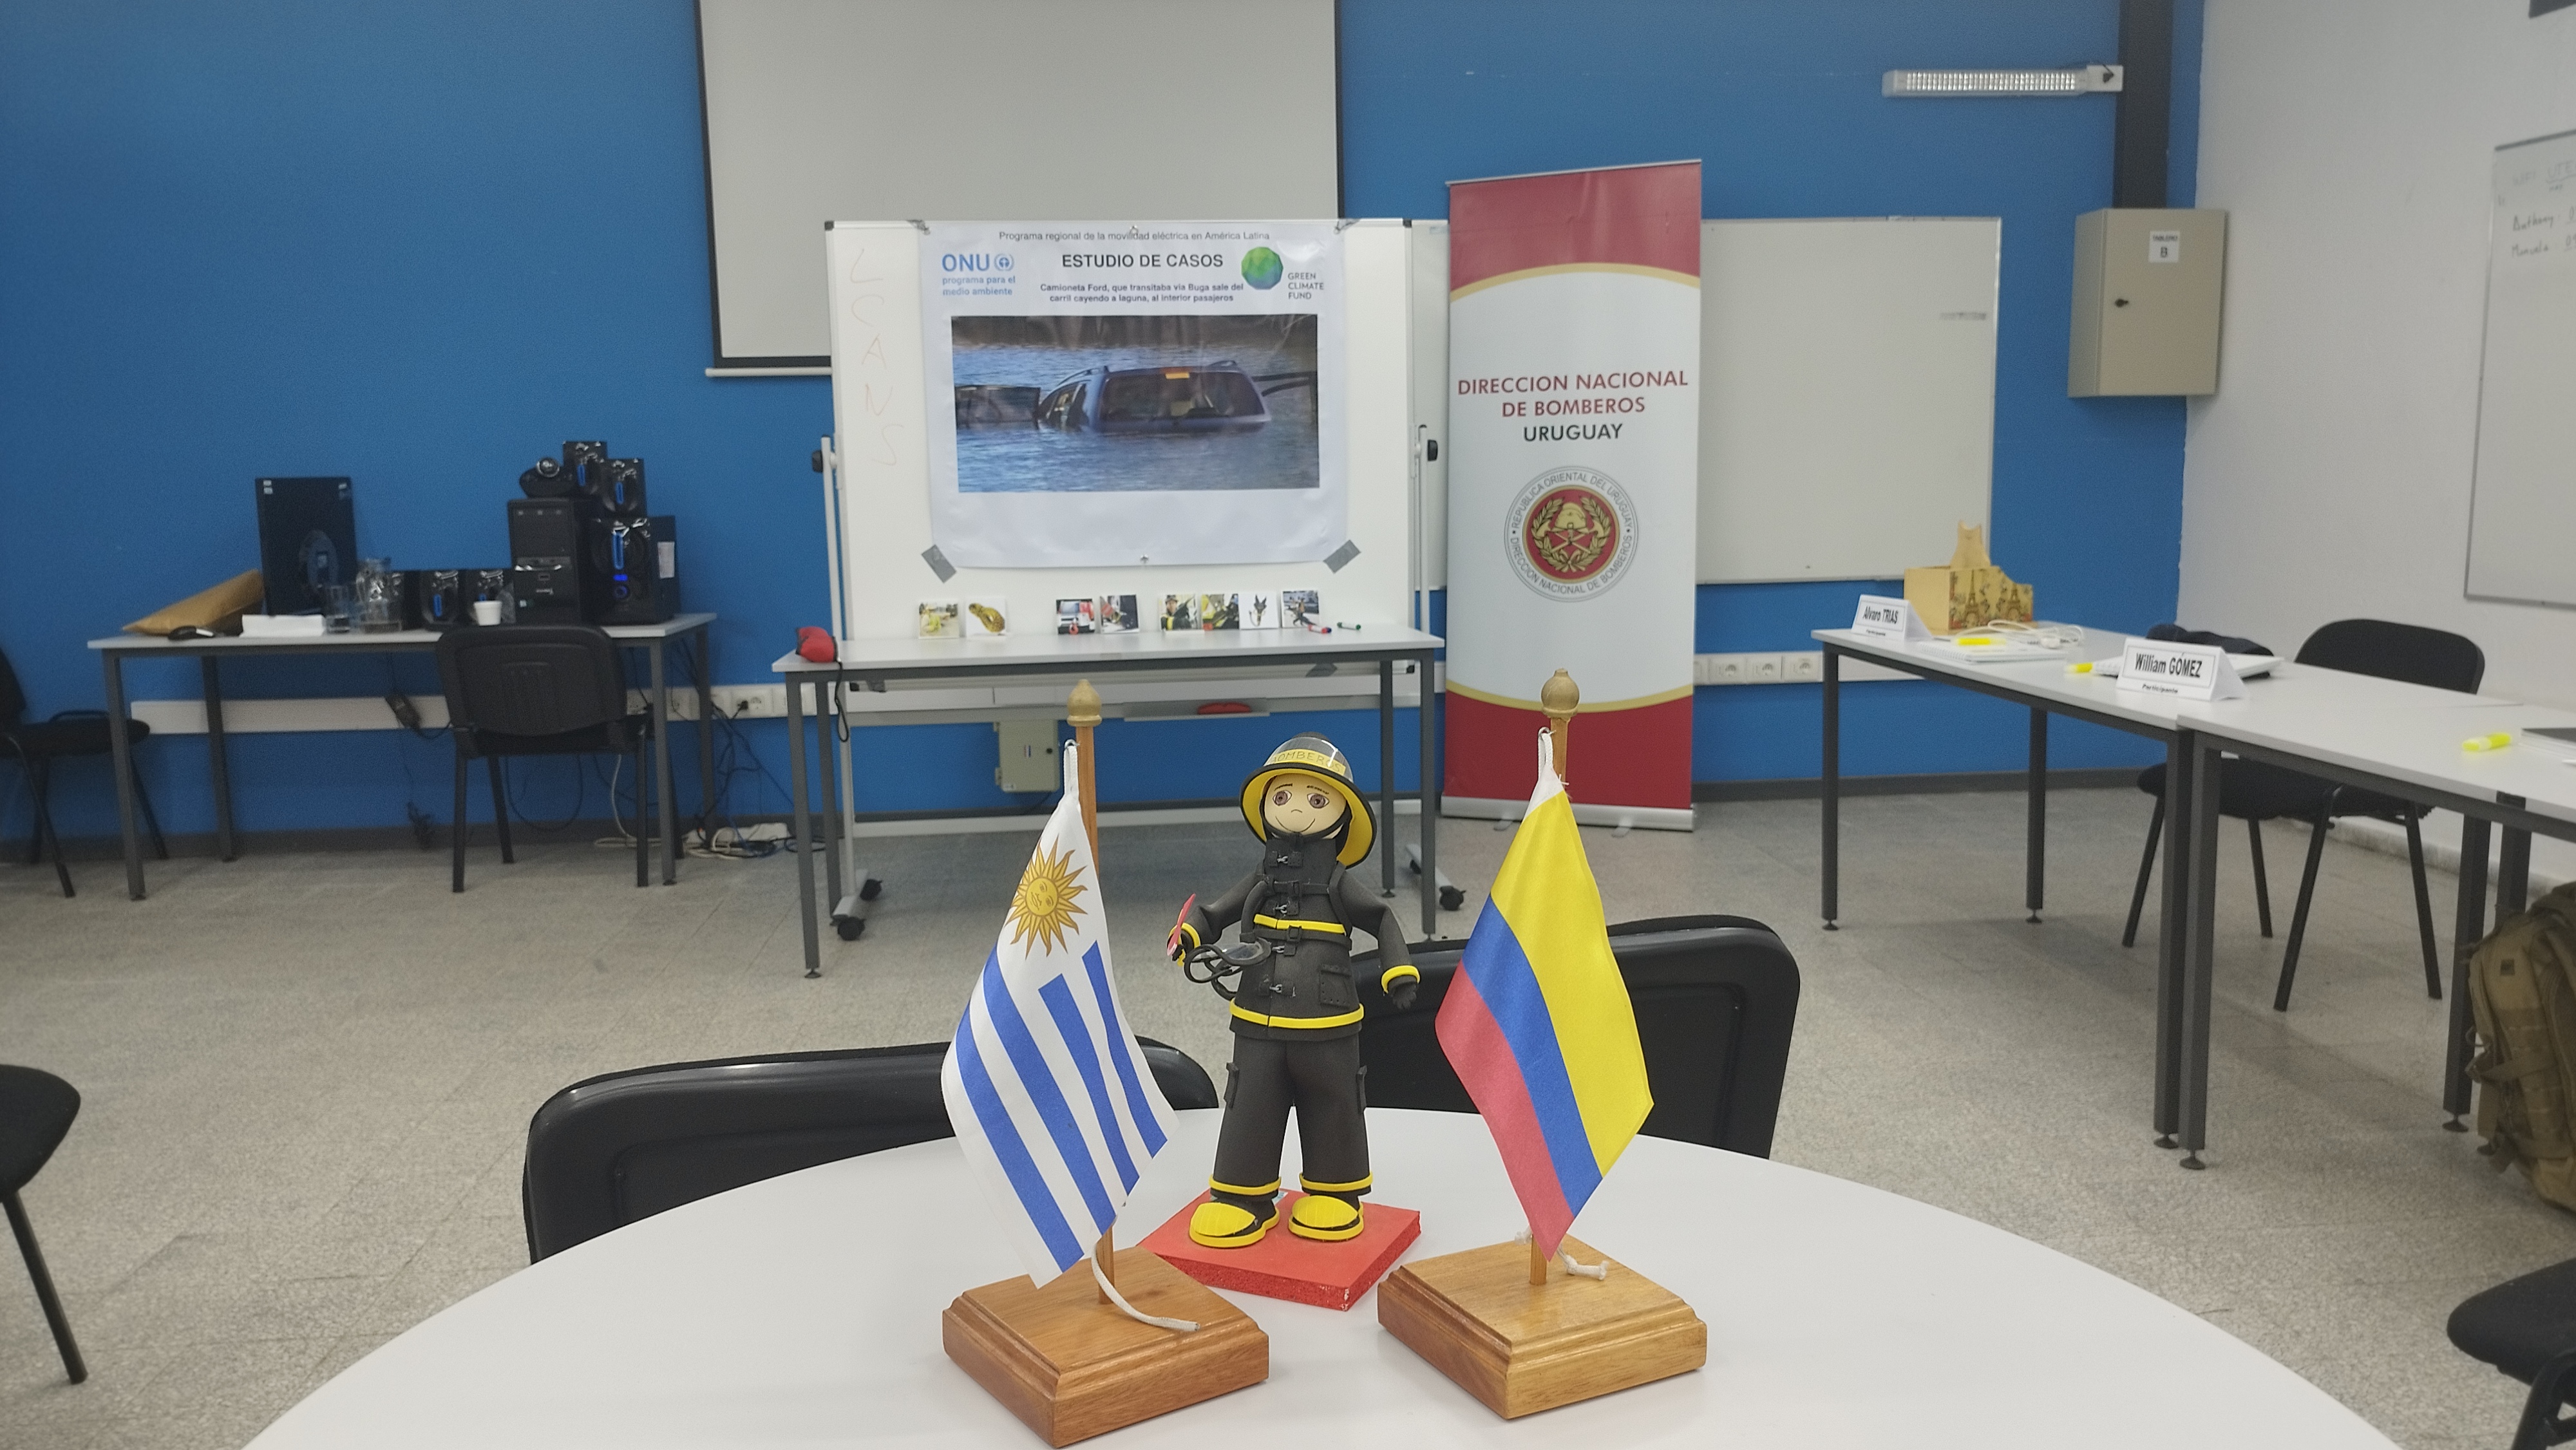 IMG_20230511_103322-uf36LvY9.jpg - El pasado jueves 11 de mayo culminó la &#034;Capacitación para bomberos sobre manejo de incidentes relacionados con la movilidad eléctrica&#034; en donde se capacitaron a 25 bomberos en la Base Aérea de Santa Bernardina del departamento de Durazno. Esta capacitación es la continuación del primer curso regional que organizó la plataforma MOVE del Programa de la Naciones Unidas para el Medio Ambiente a finales de 2022 en Paraguay, donde participaron y se formaron dos bomberos instructores de Uruguay.